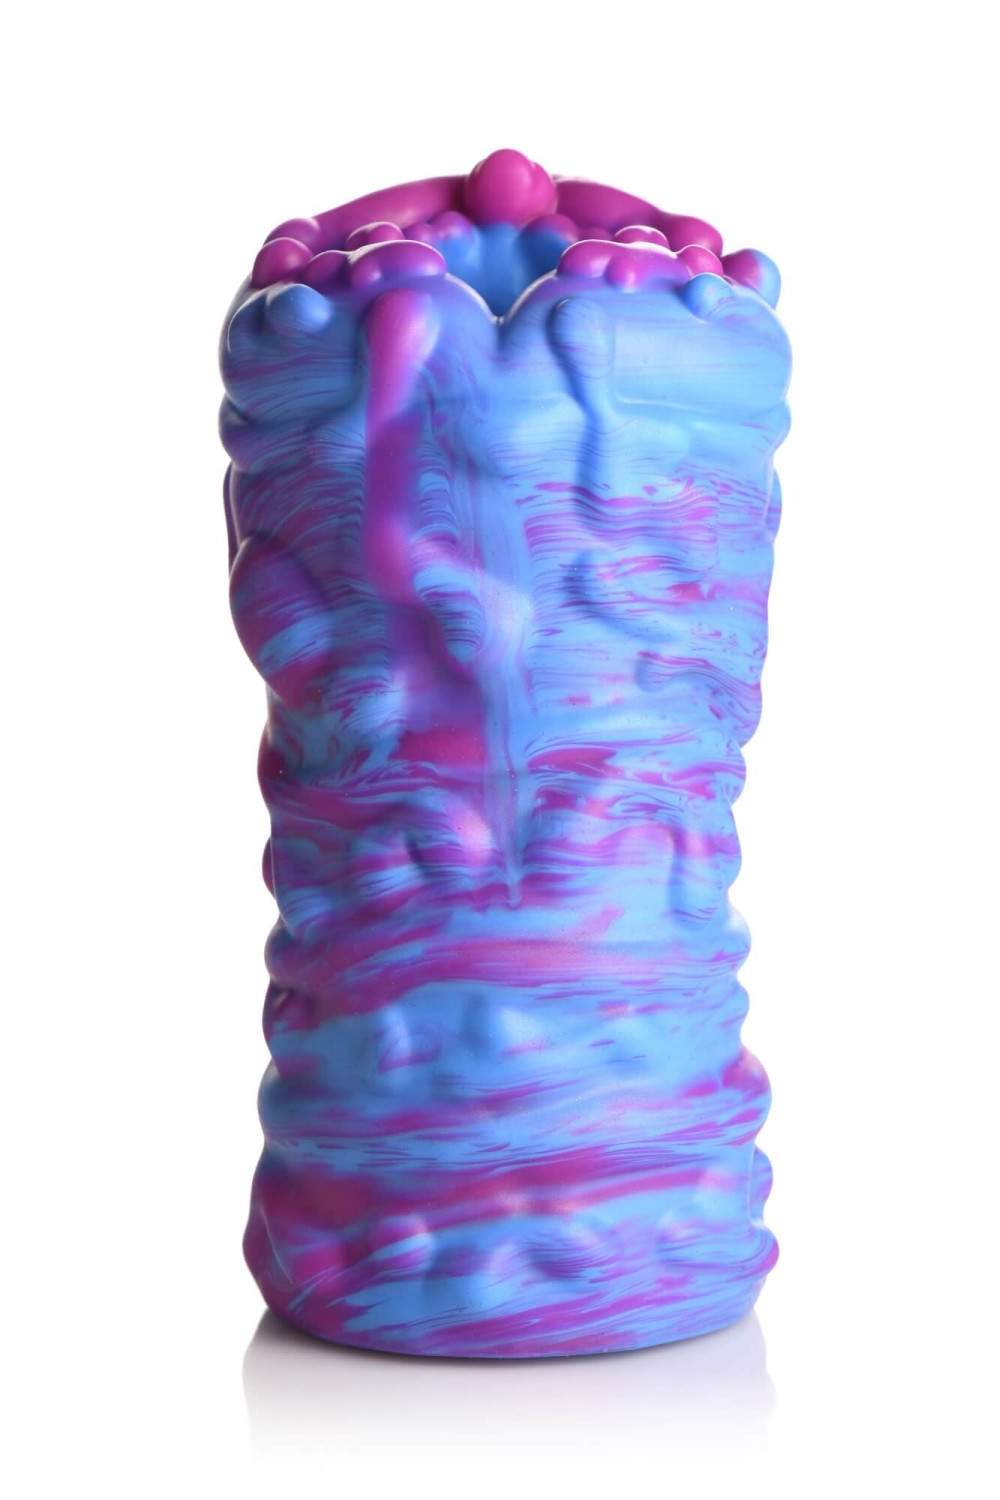 Creature Cocks - Cyclone - Silicone Alien Vagina Stroker - Purple